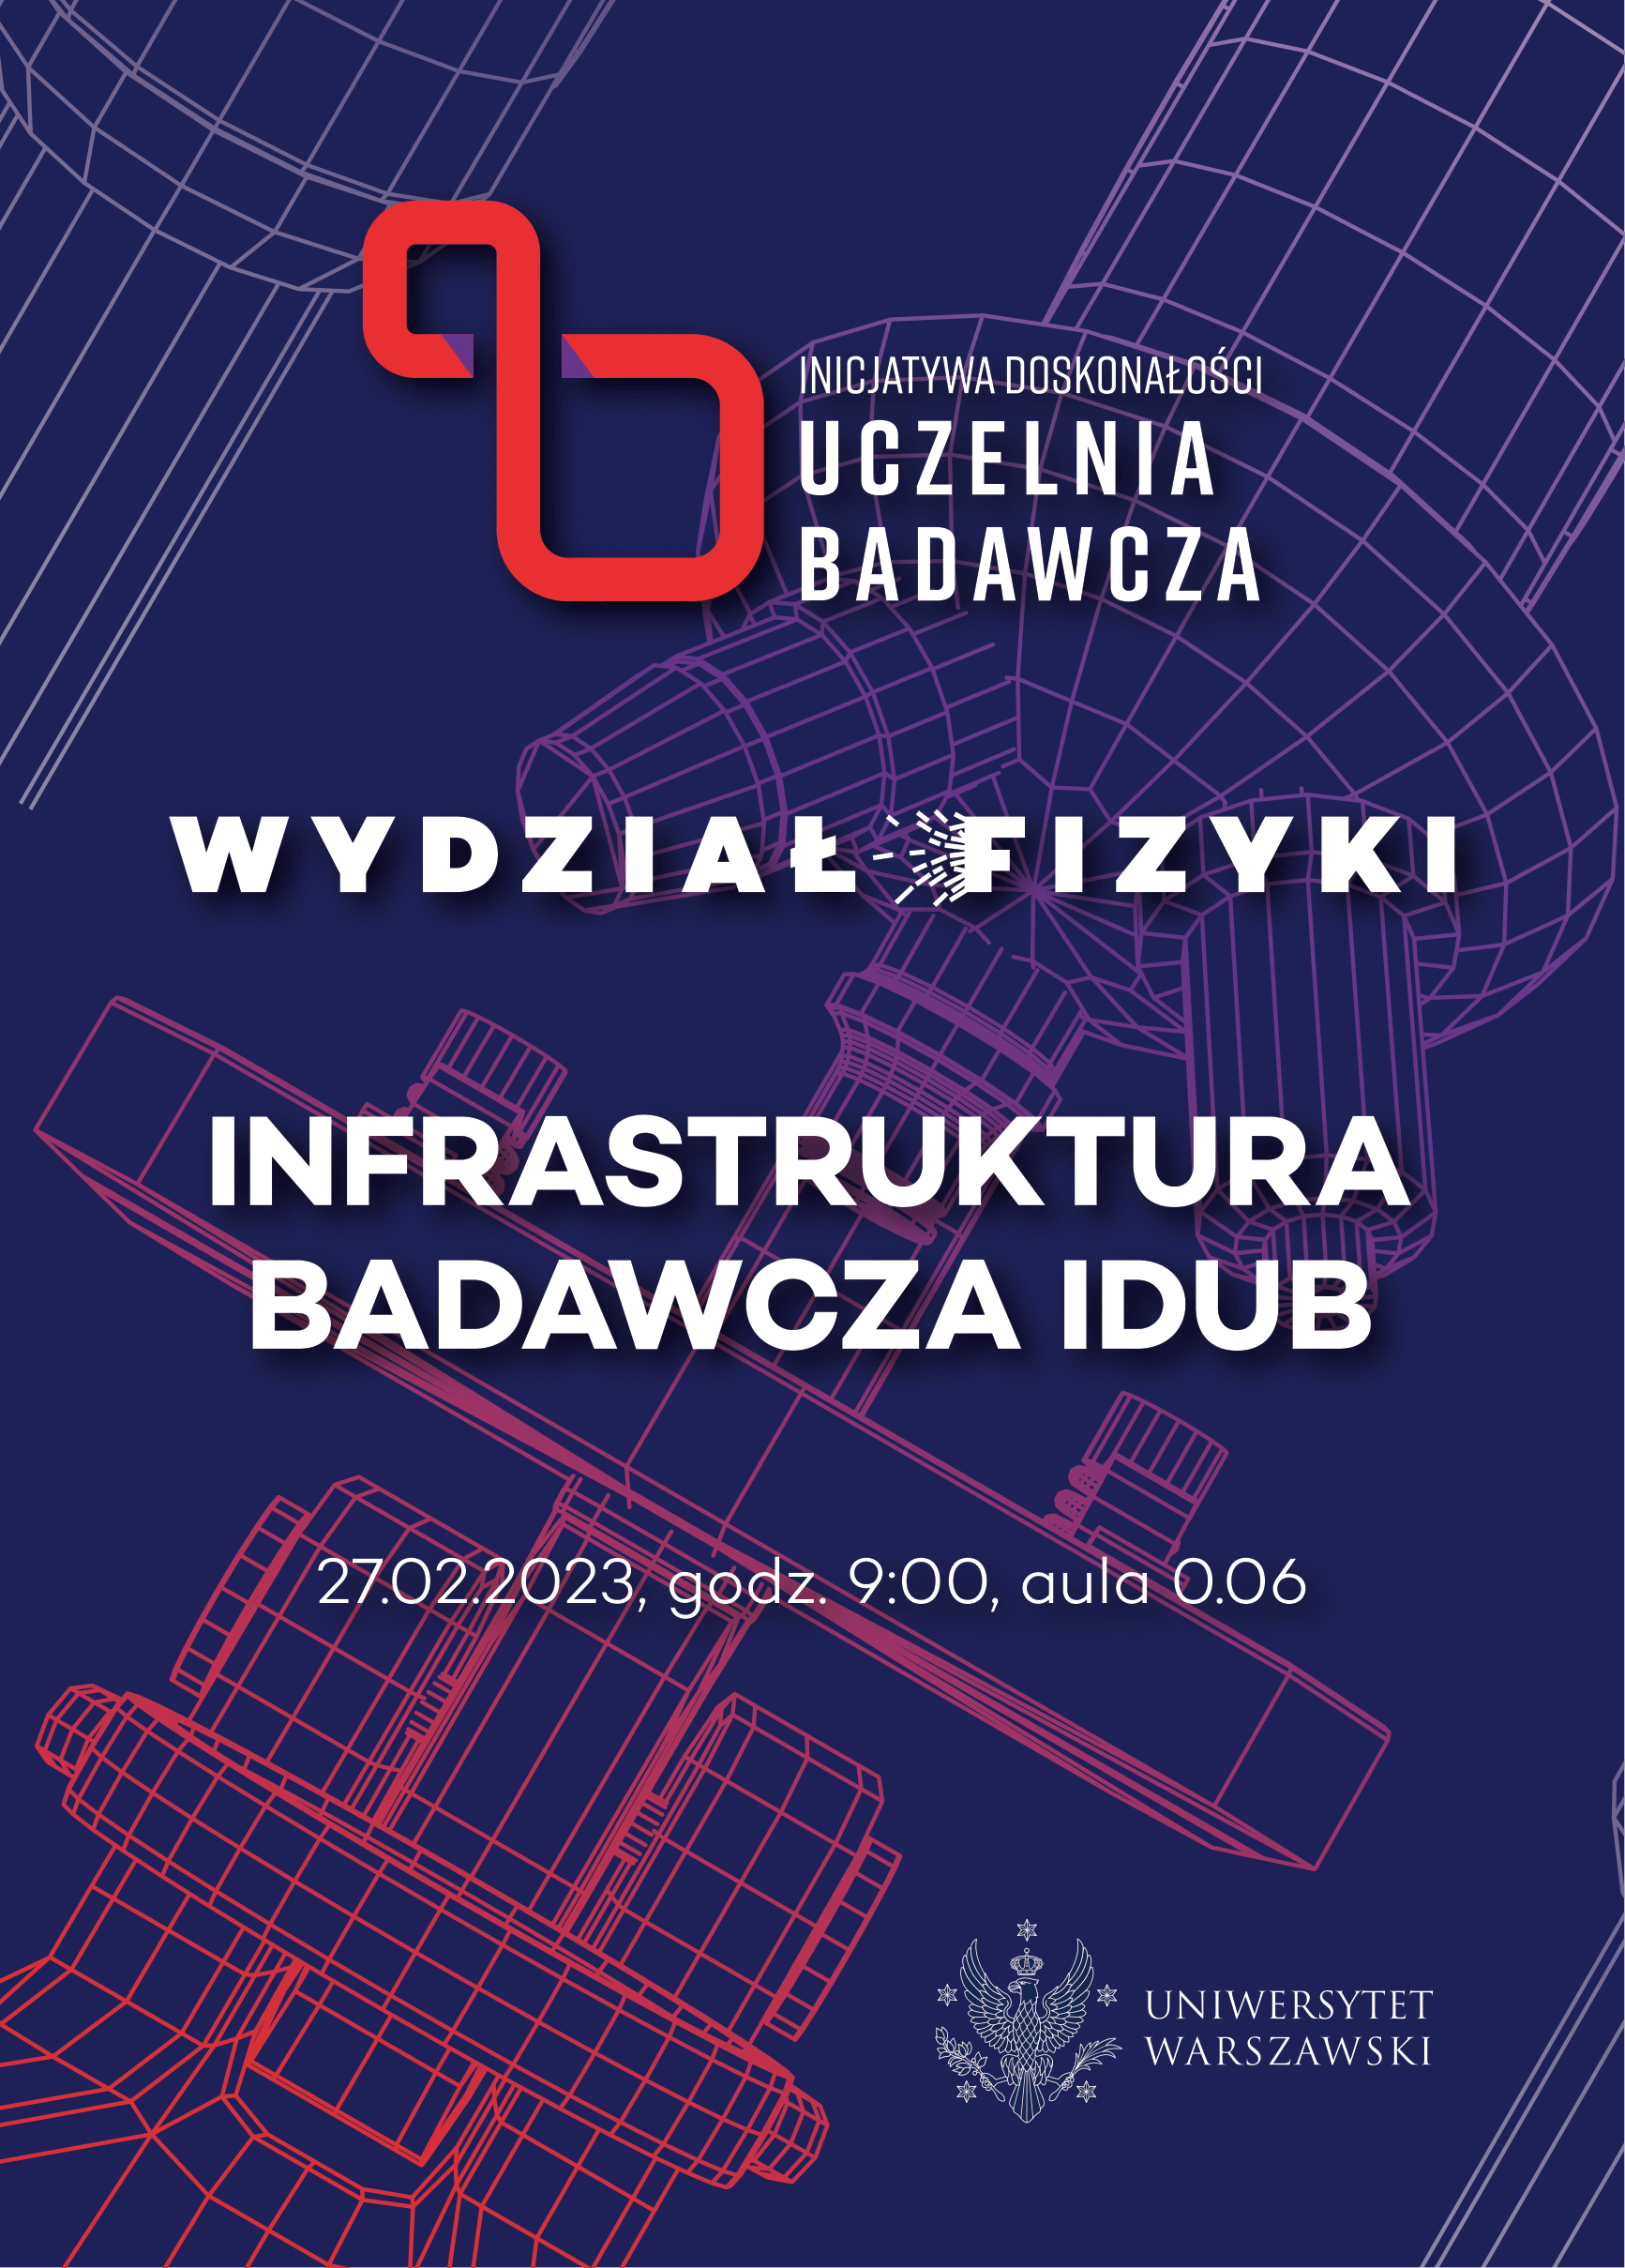 Plakat konferencji "Infrastruktura badawcza IDUB"